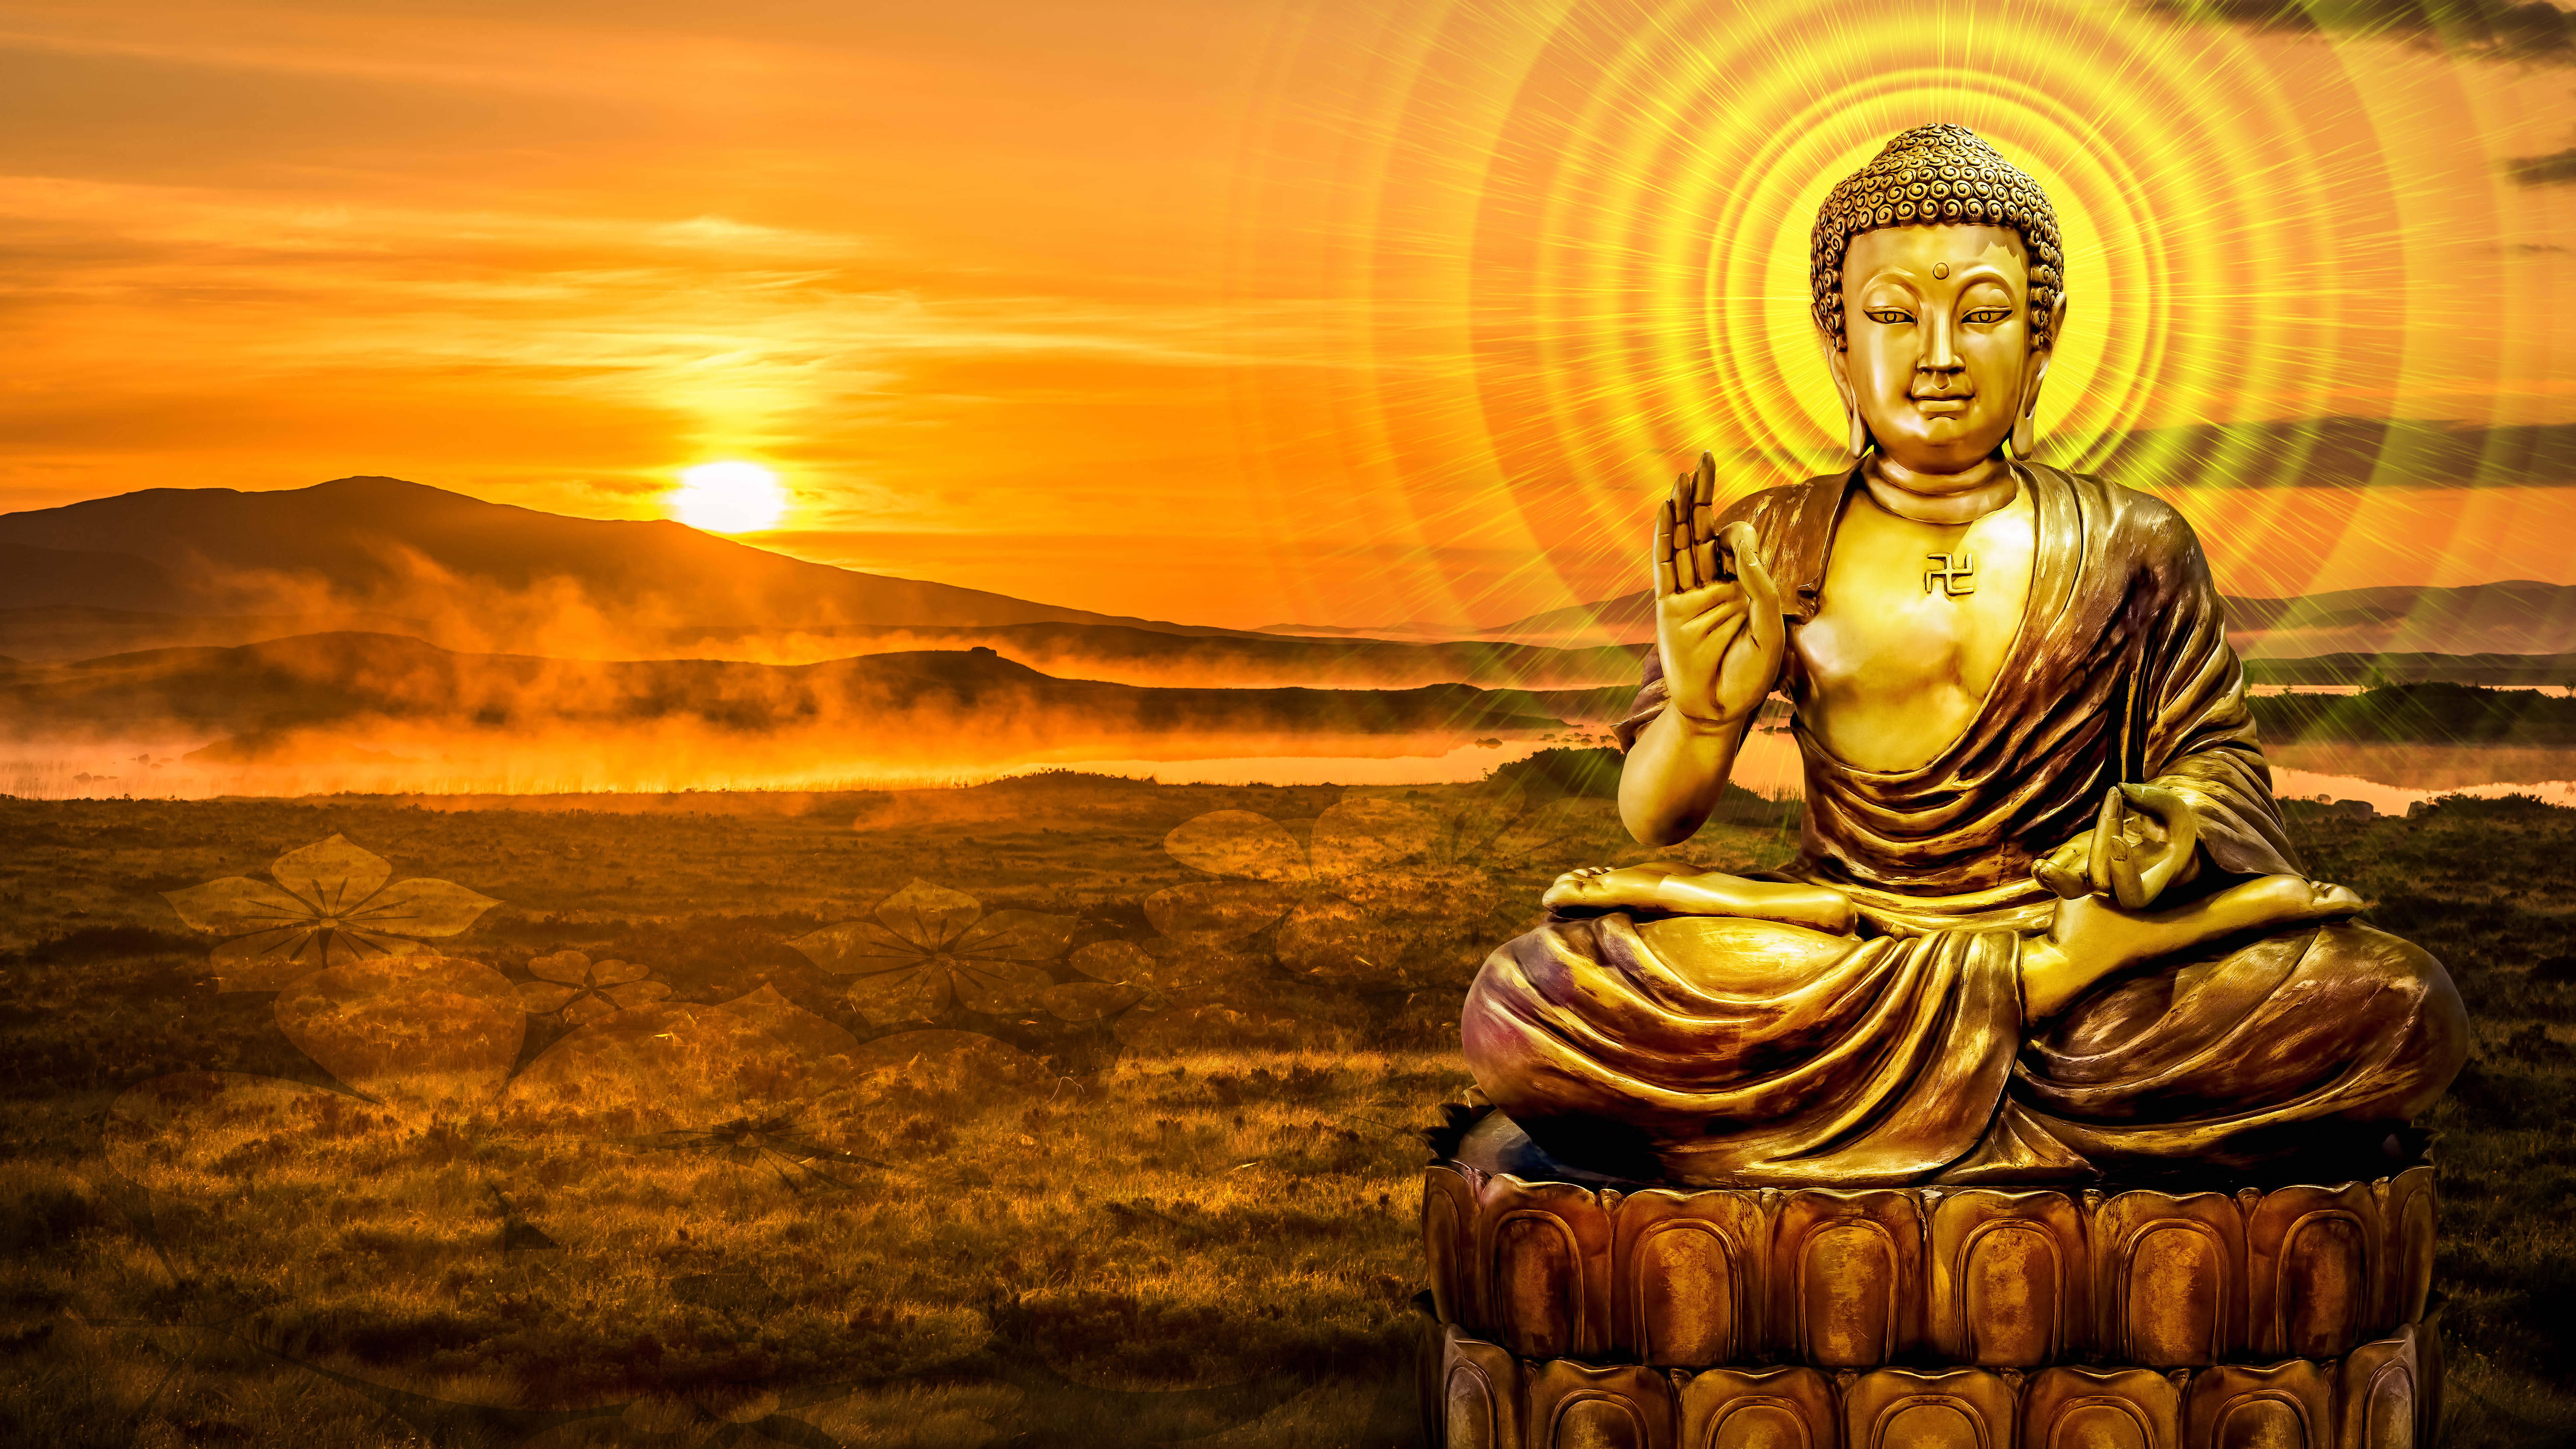 Nhìn vào hình ảnh Phật Di Lặc vàng, bạn sẽ cảm nhận được sự bình an, may mắn và phúc lộc đang đến với mình. Hãy để tâm hồn thư giãn và ngắm nhìn tác phẩm này nhé.